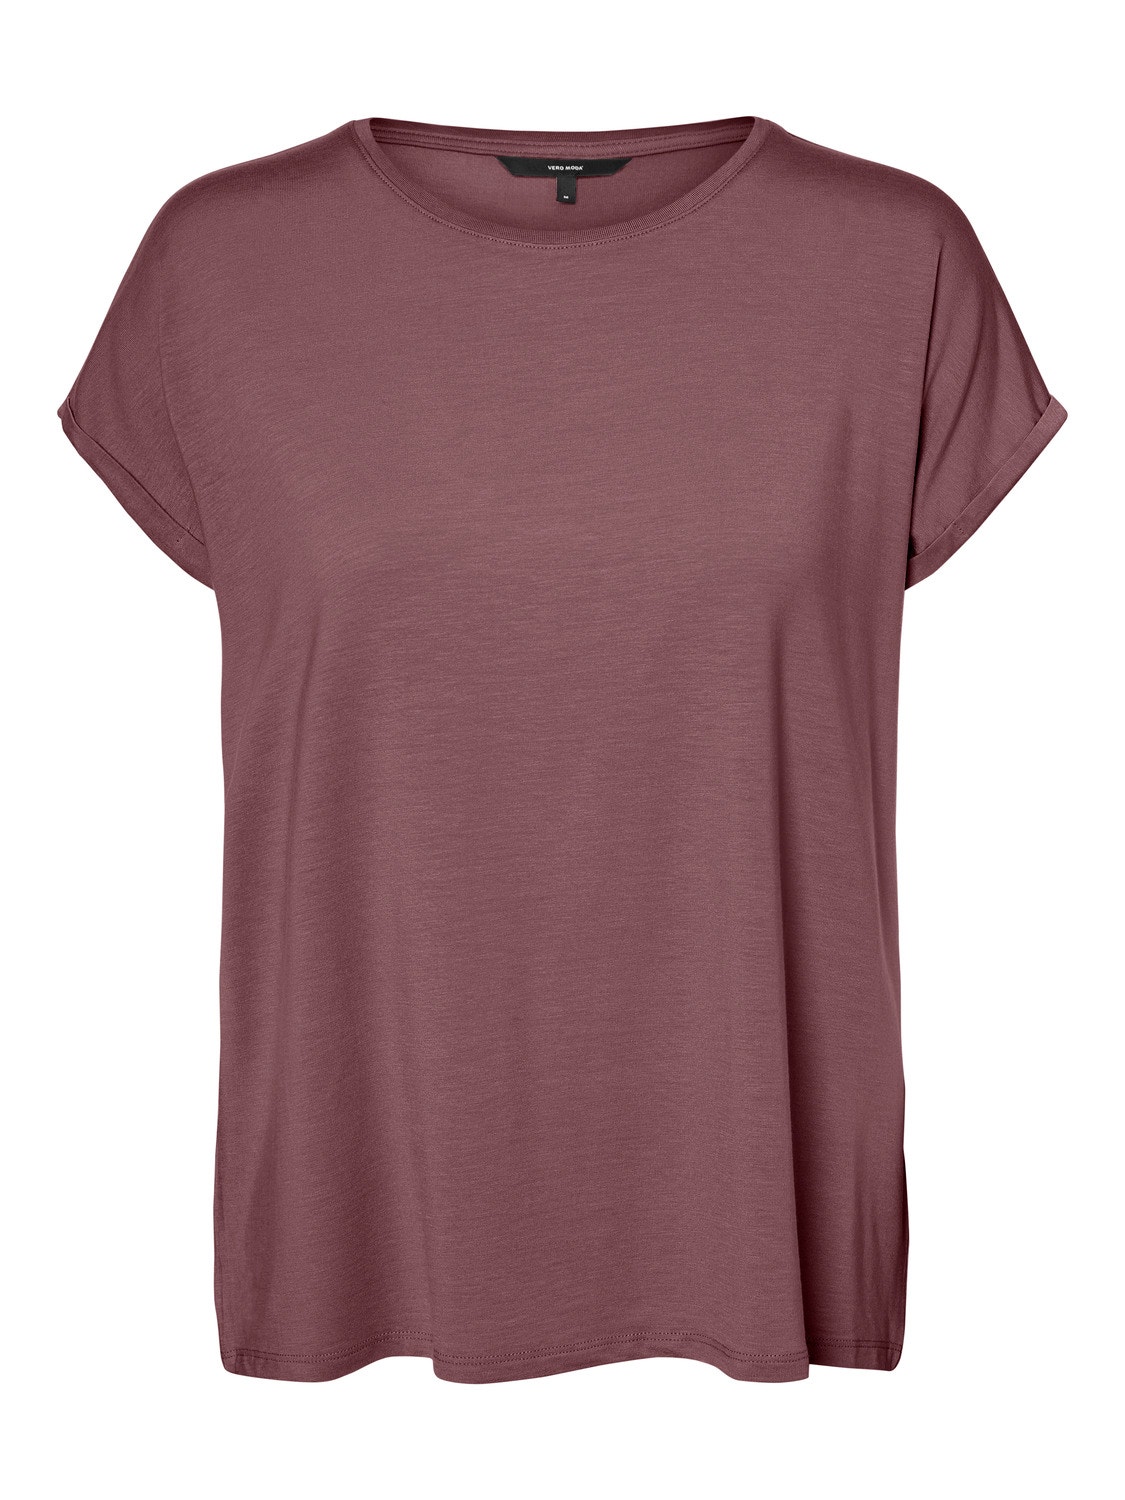 Vero Moda VMAVA T-Shirt -Rose Brown - 10284468